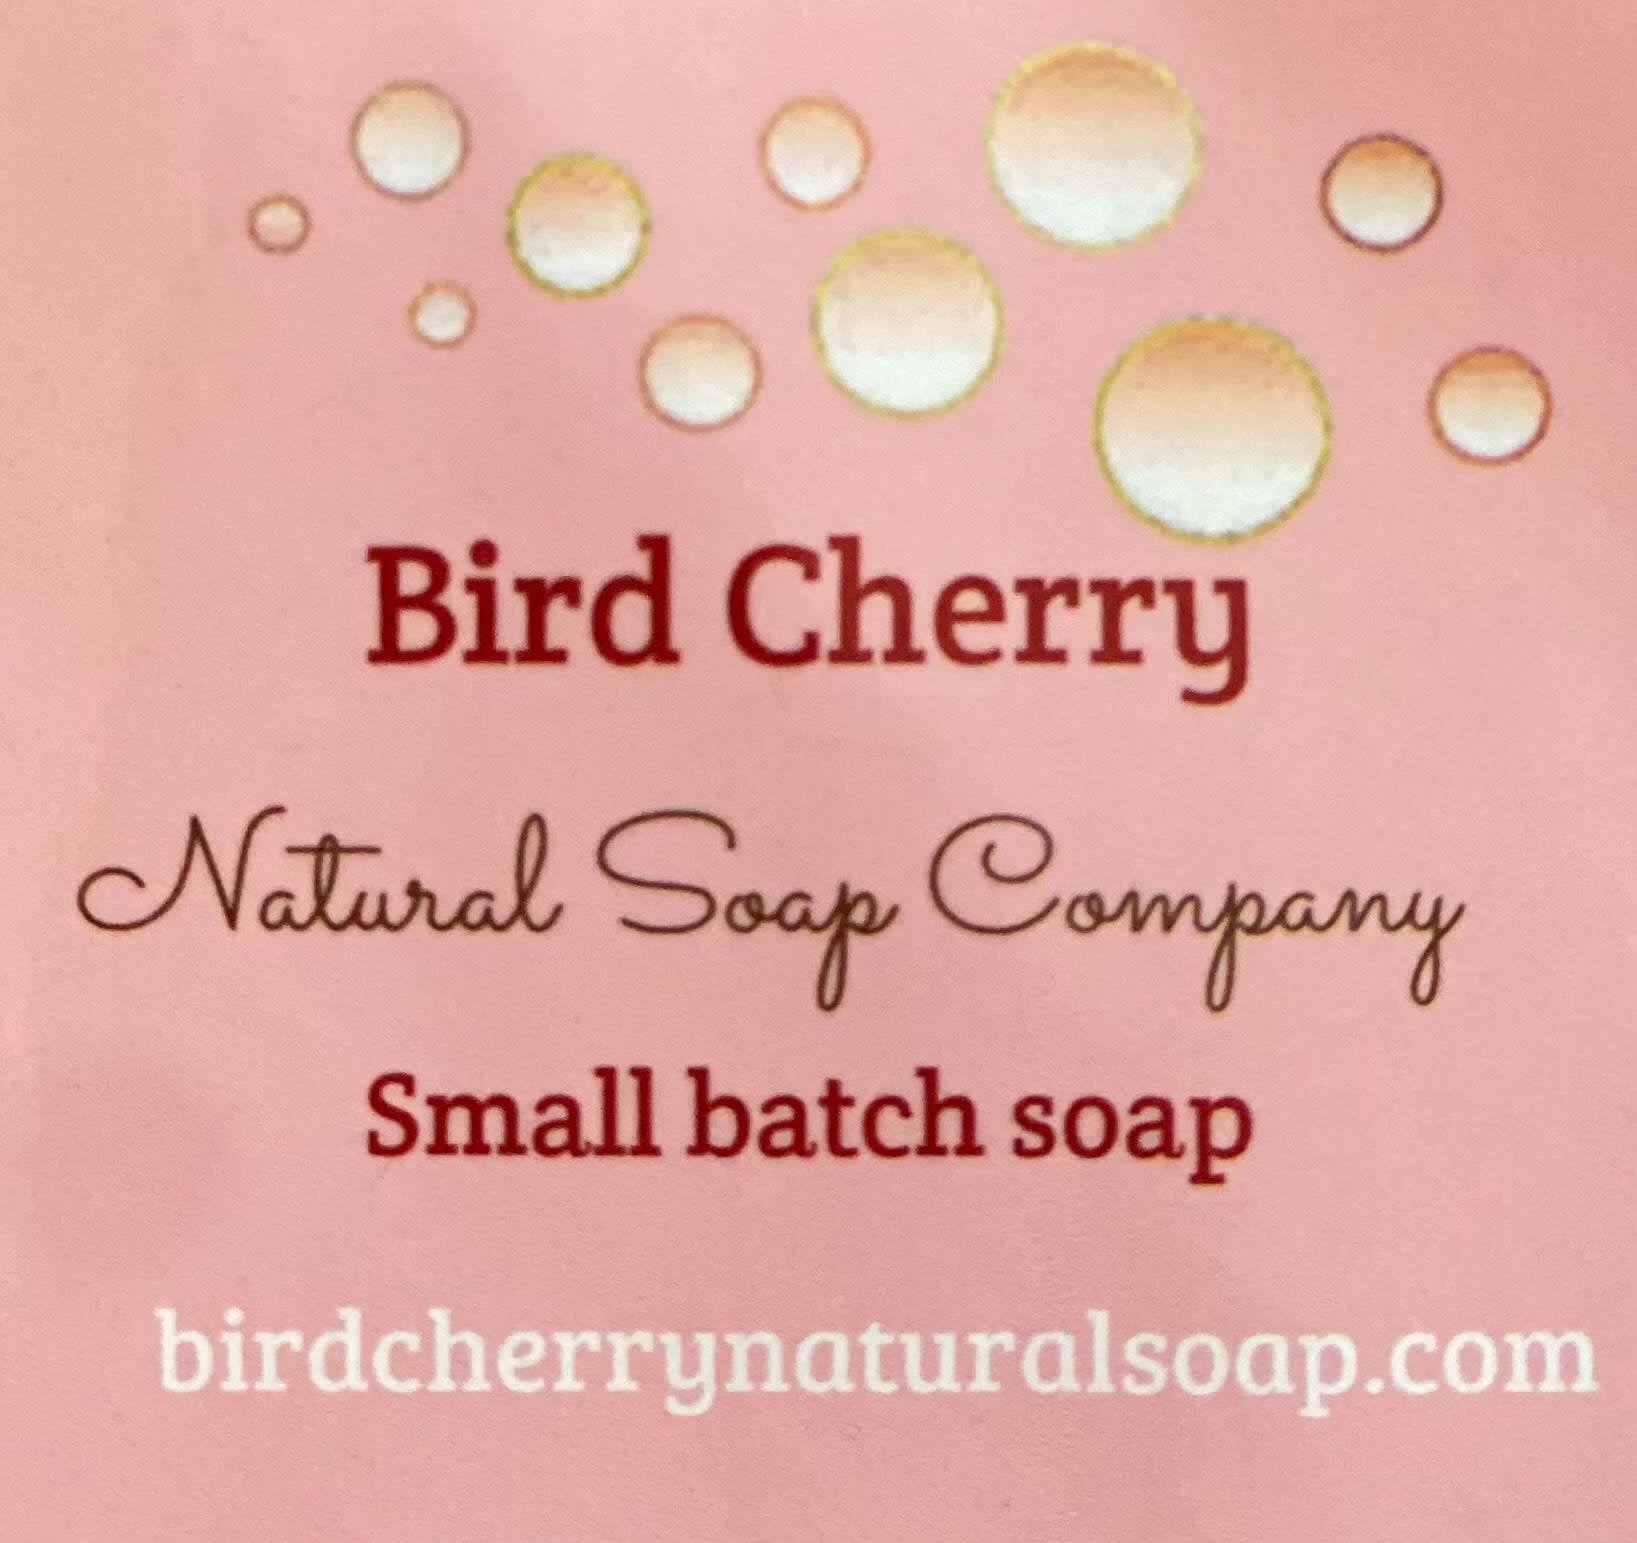 Bird Cherry Natural Soap Company